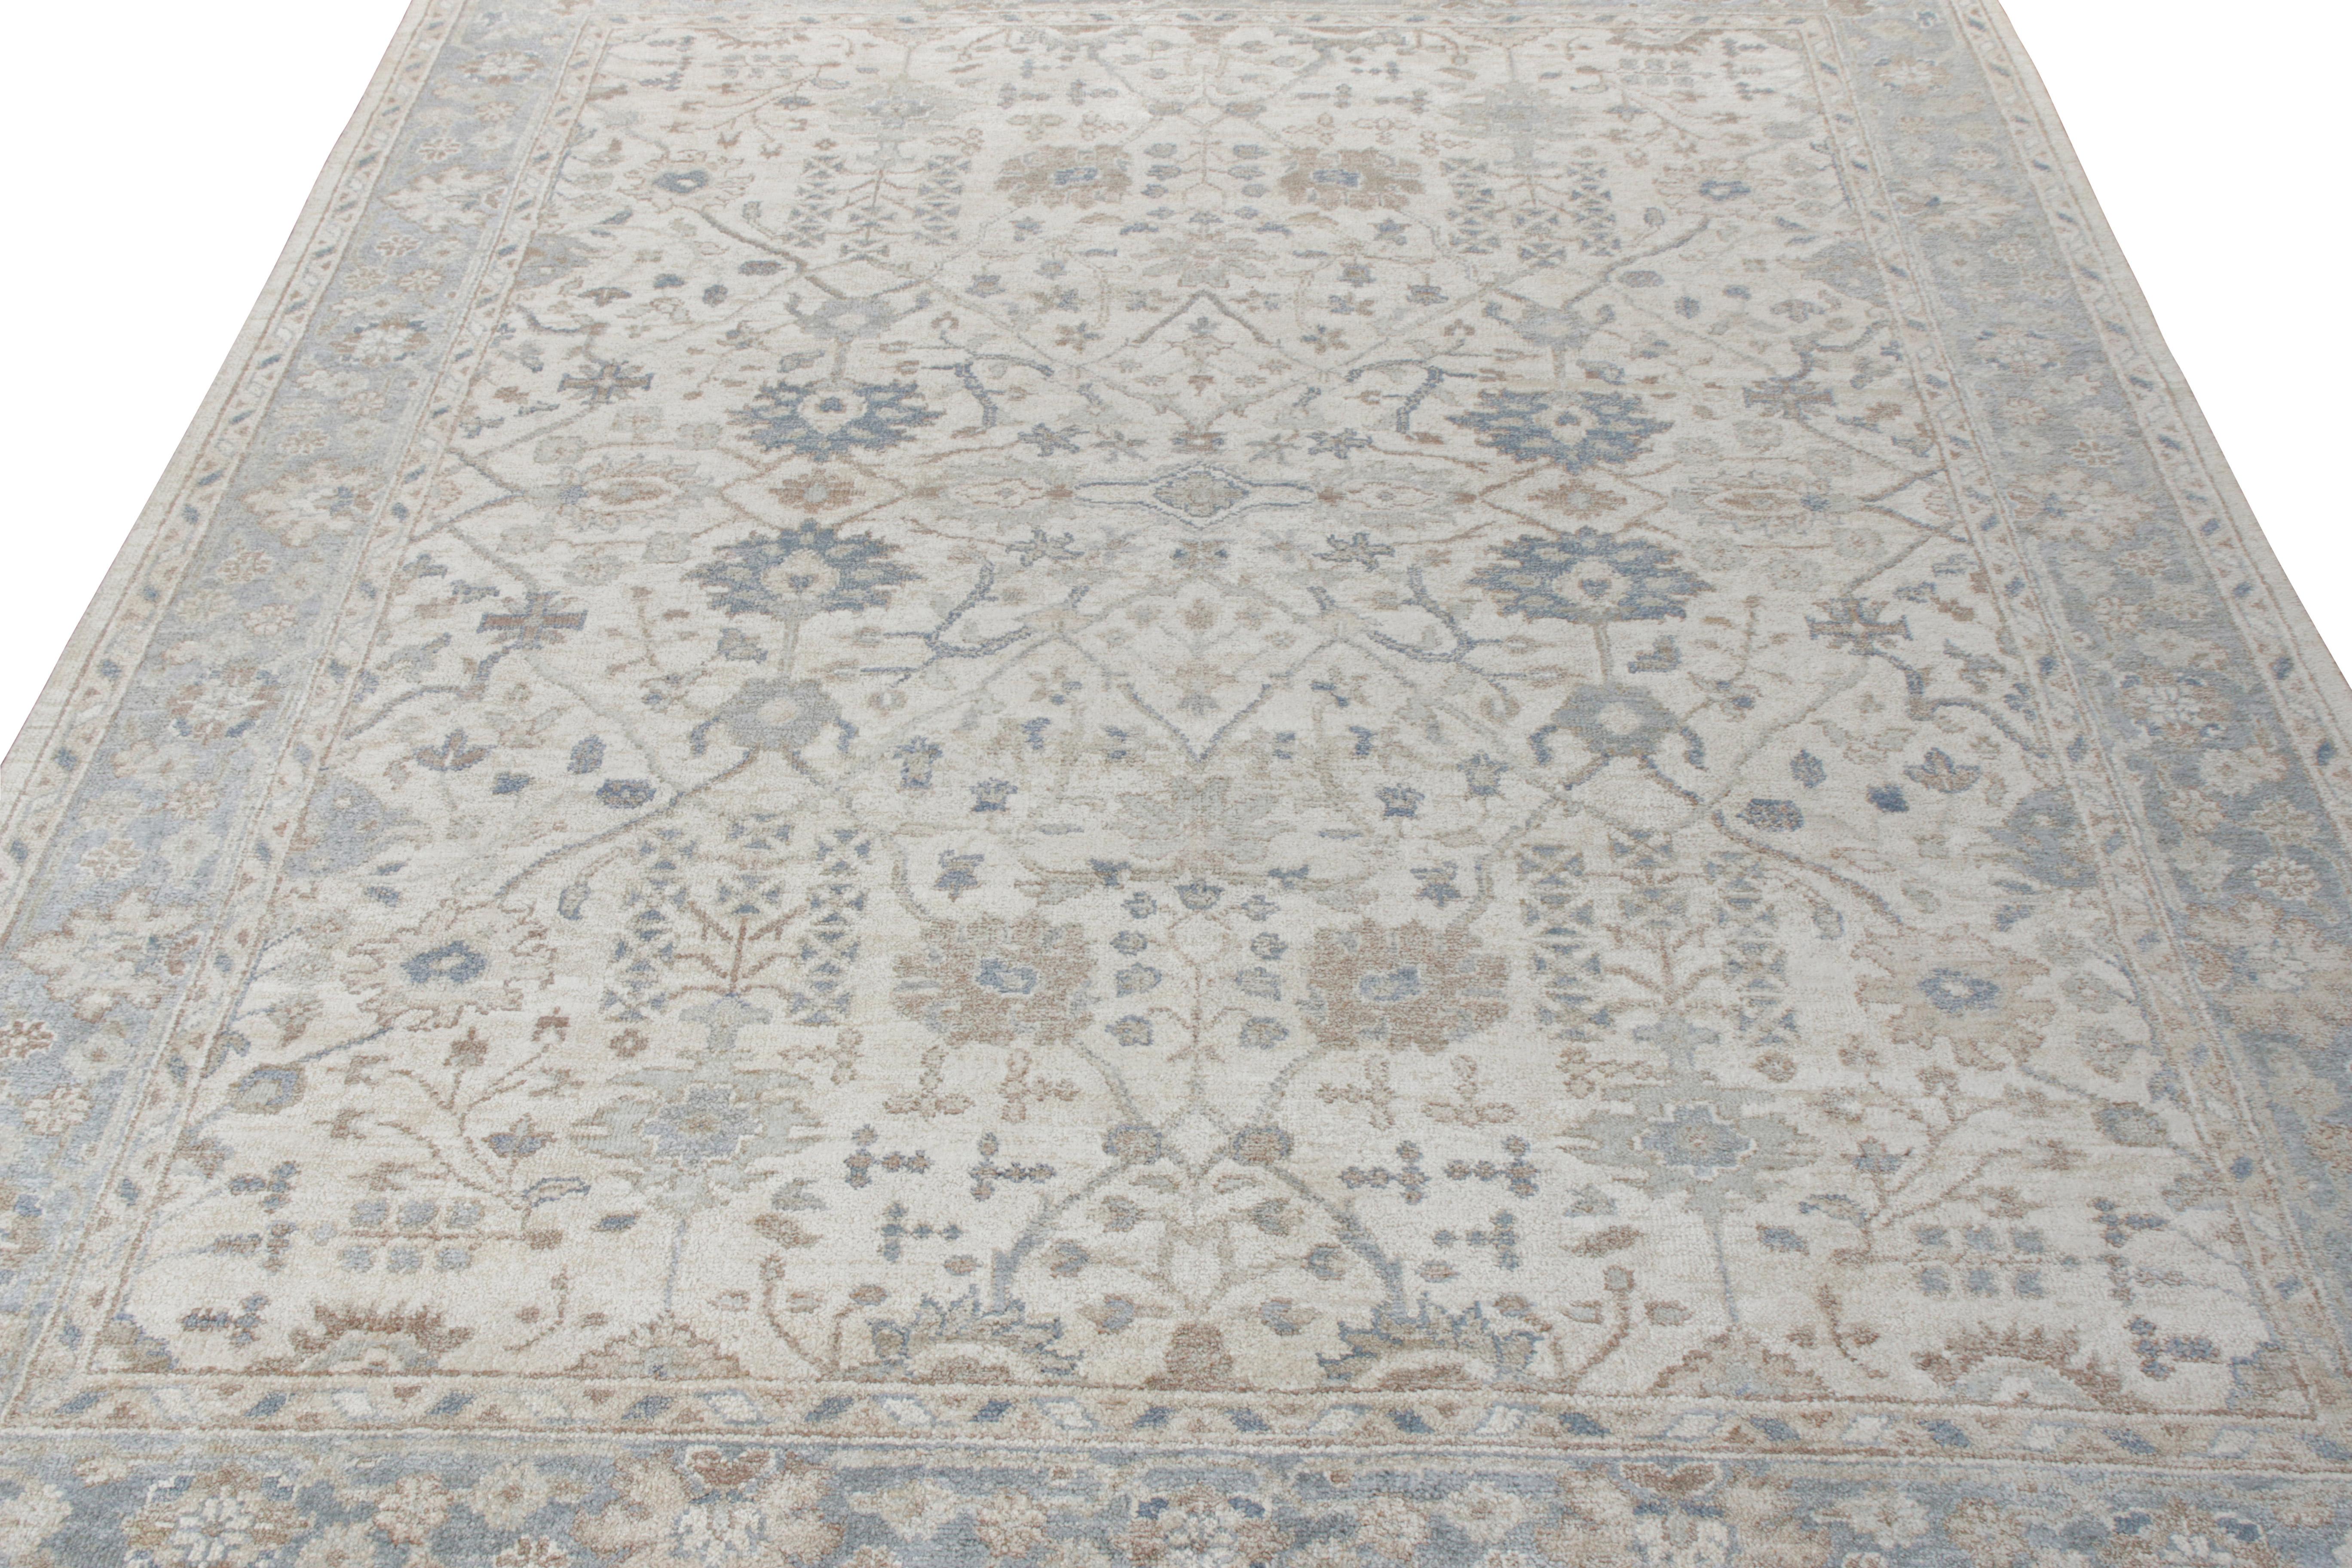 Handgeknüpft aus feiner Sari-Seide präsentiert Rug & Kilim diesen wunderschönen 9x12 großen Teppich aus seiner Modern Classics Collection. Inspiriert von indischen Teppichstilen, weist der Teppich ein verlockendes, florales Muster in einer kühlen